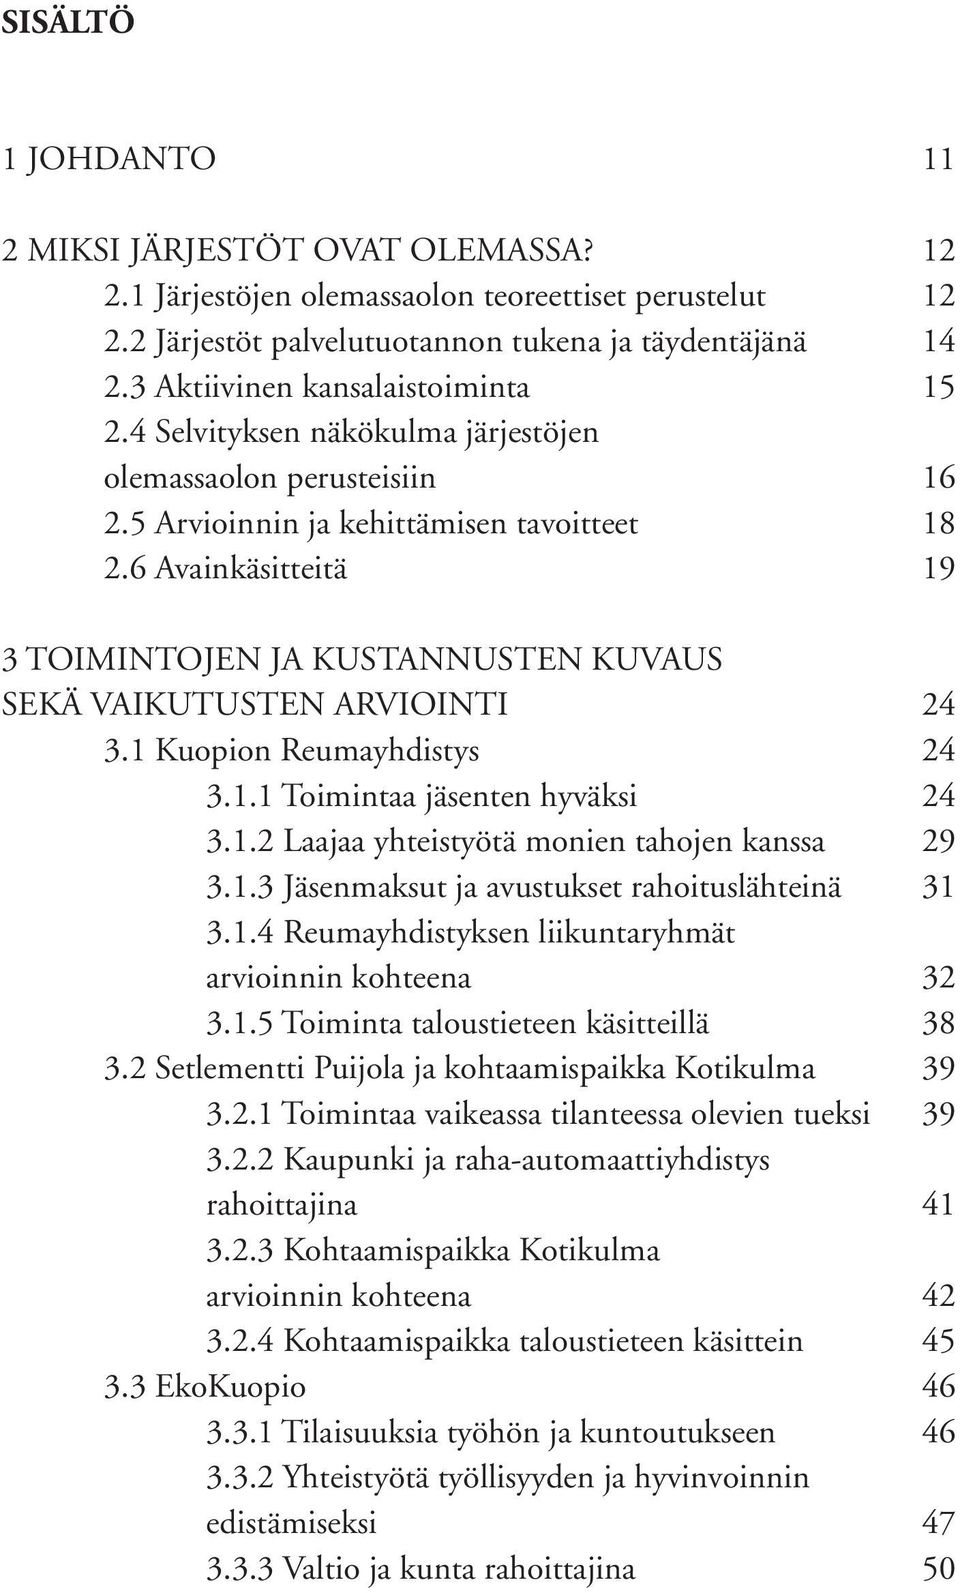 6 Avainkäsitteitä 19 3 TOIMINTOJEN JA KUSTANNUSTEN KUVAUS SEKÄ VAIKUTUSTEN ARVIOINTI 24 3.1 Kuopion Reumayhdistys 24 3.1.1 Toimintaa jäsenten hyväksi 24 3.1.2 Laajaa yhteistyötä monien tahojen kanssa 29 3.